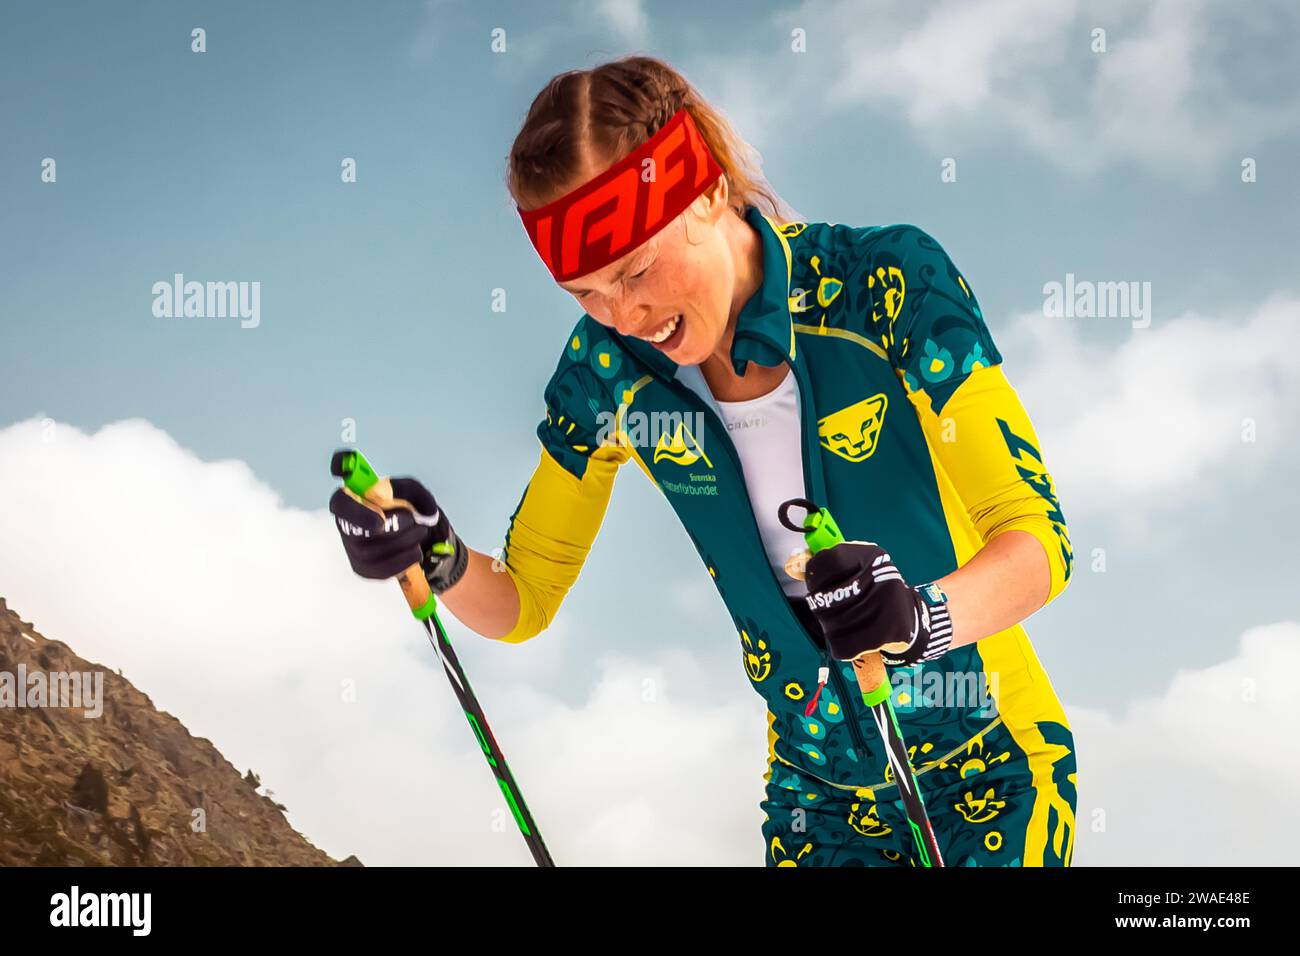 Une skieuse alpiniste aux Championnats du monde d'Andorre 2020 Banque D'Images